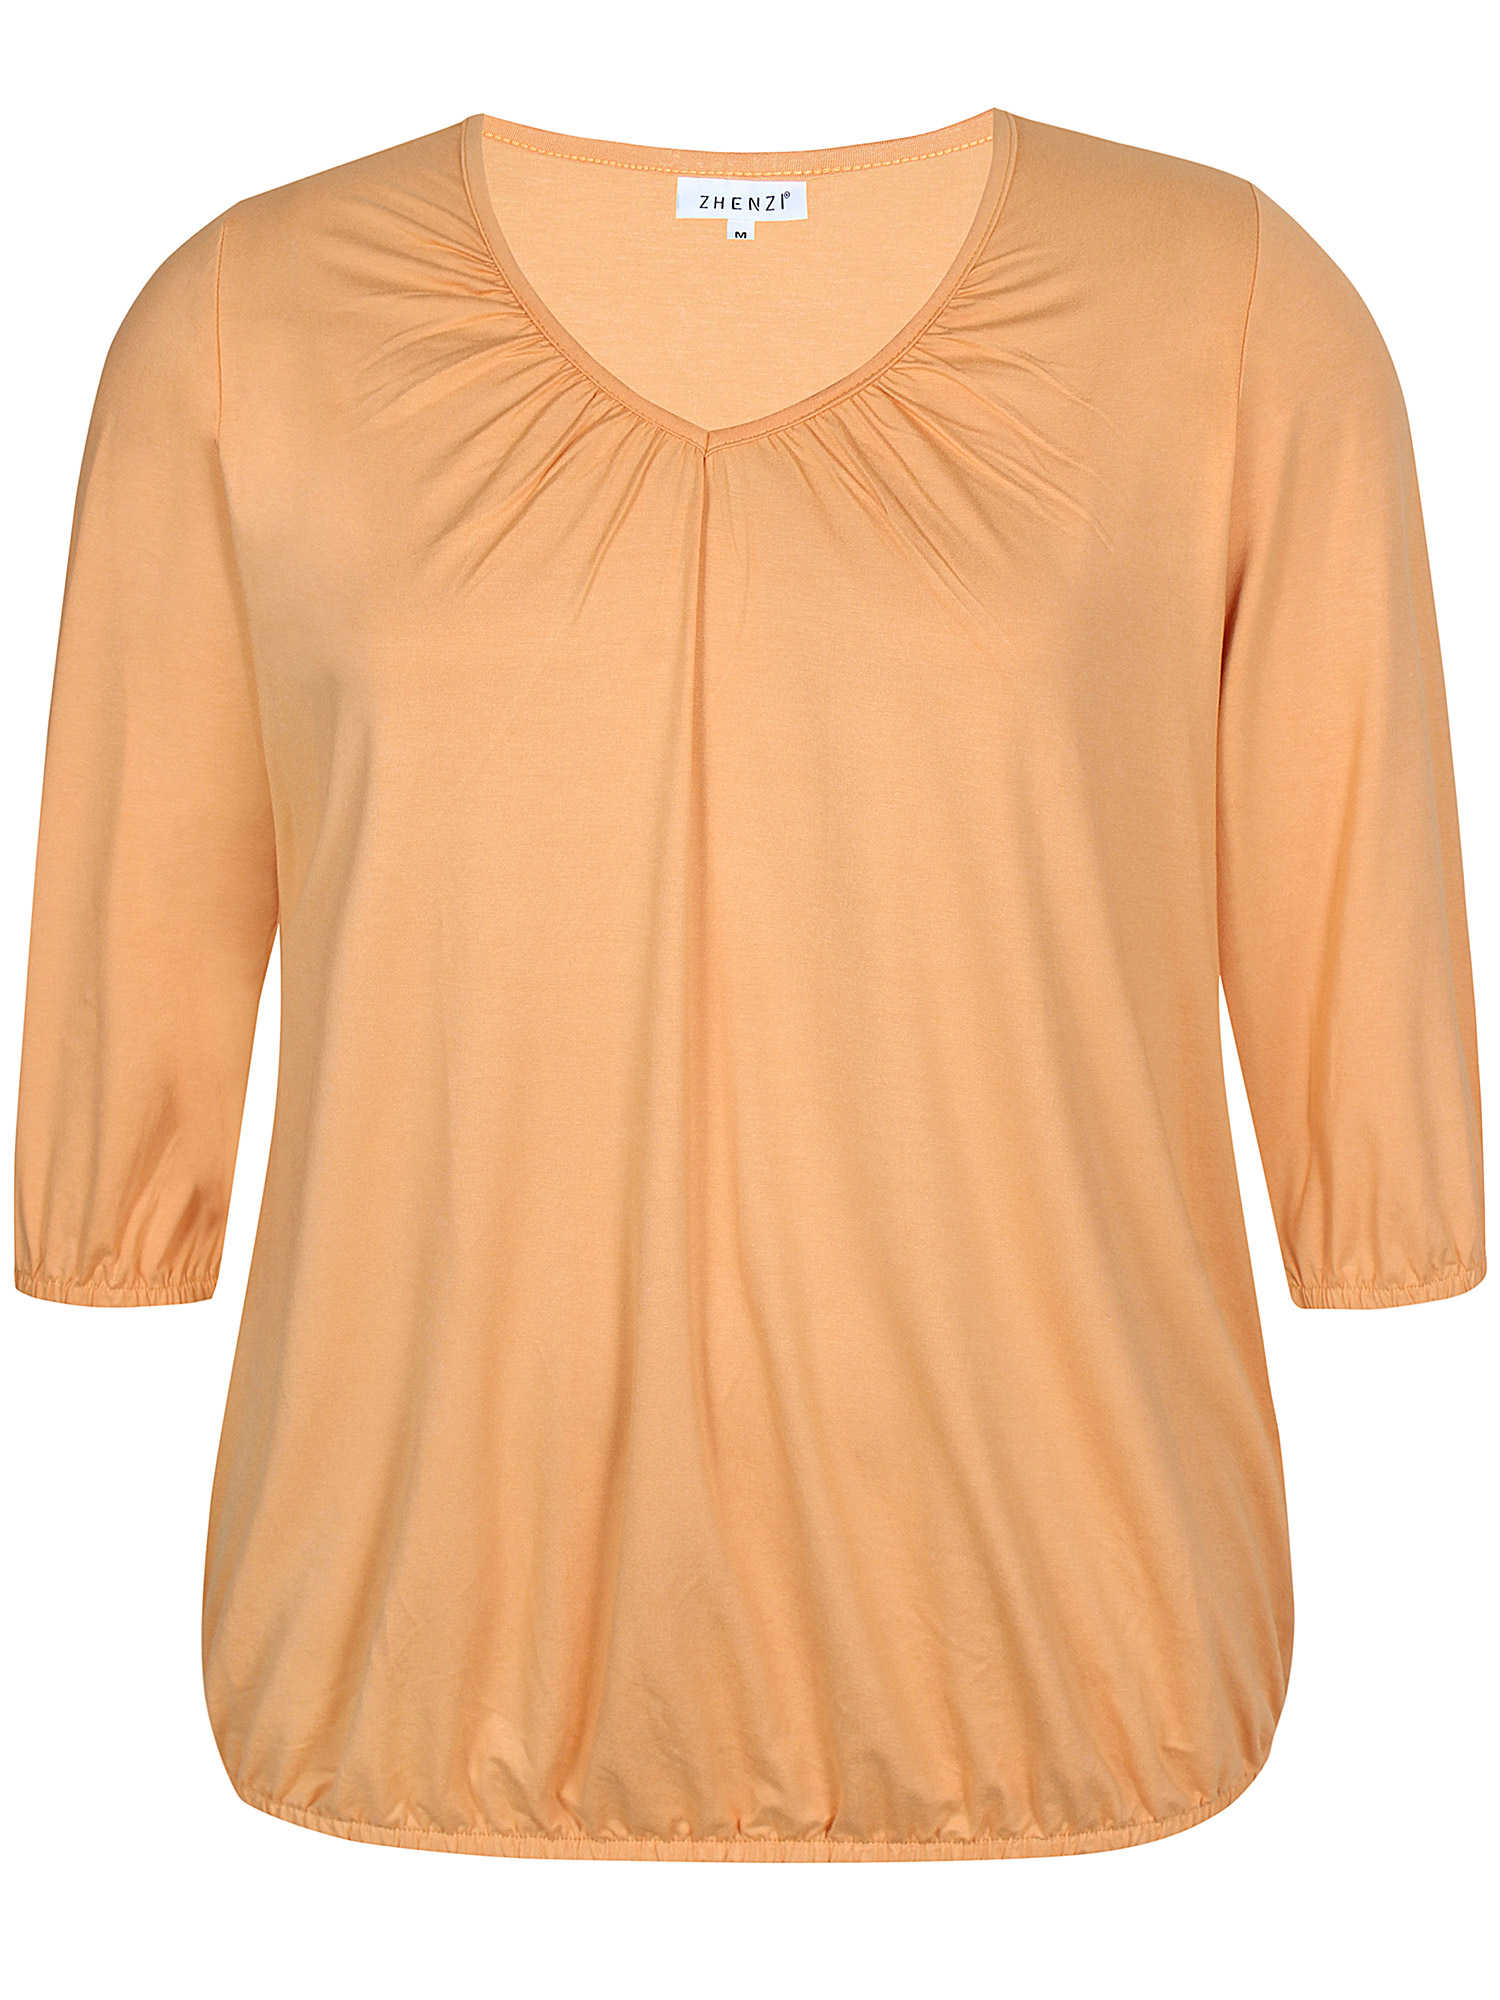 GIRO - Fersken farvet jersey bluse med elastikkant fra Zhenzi